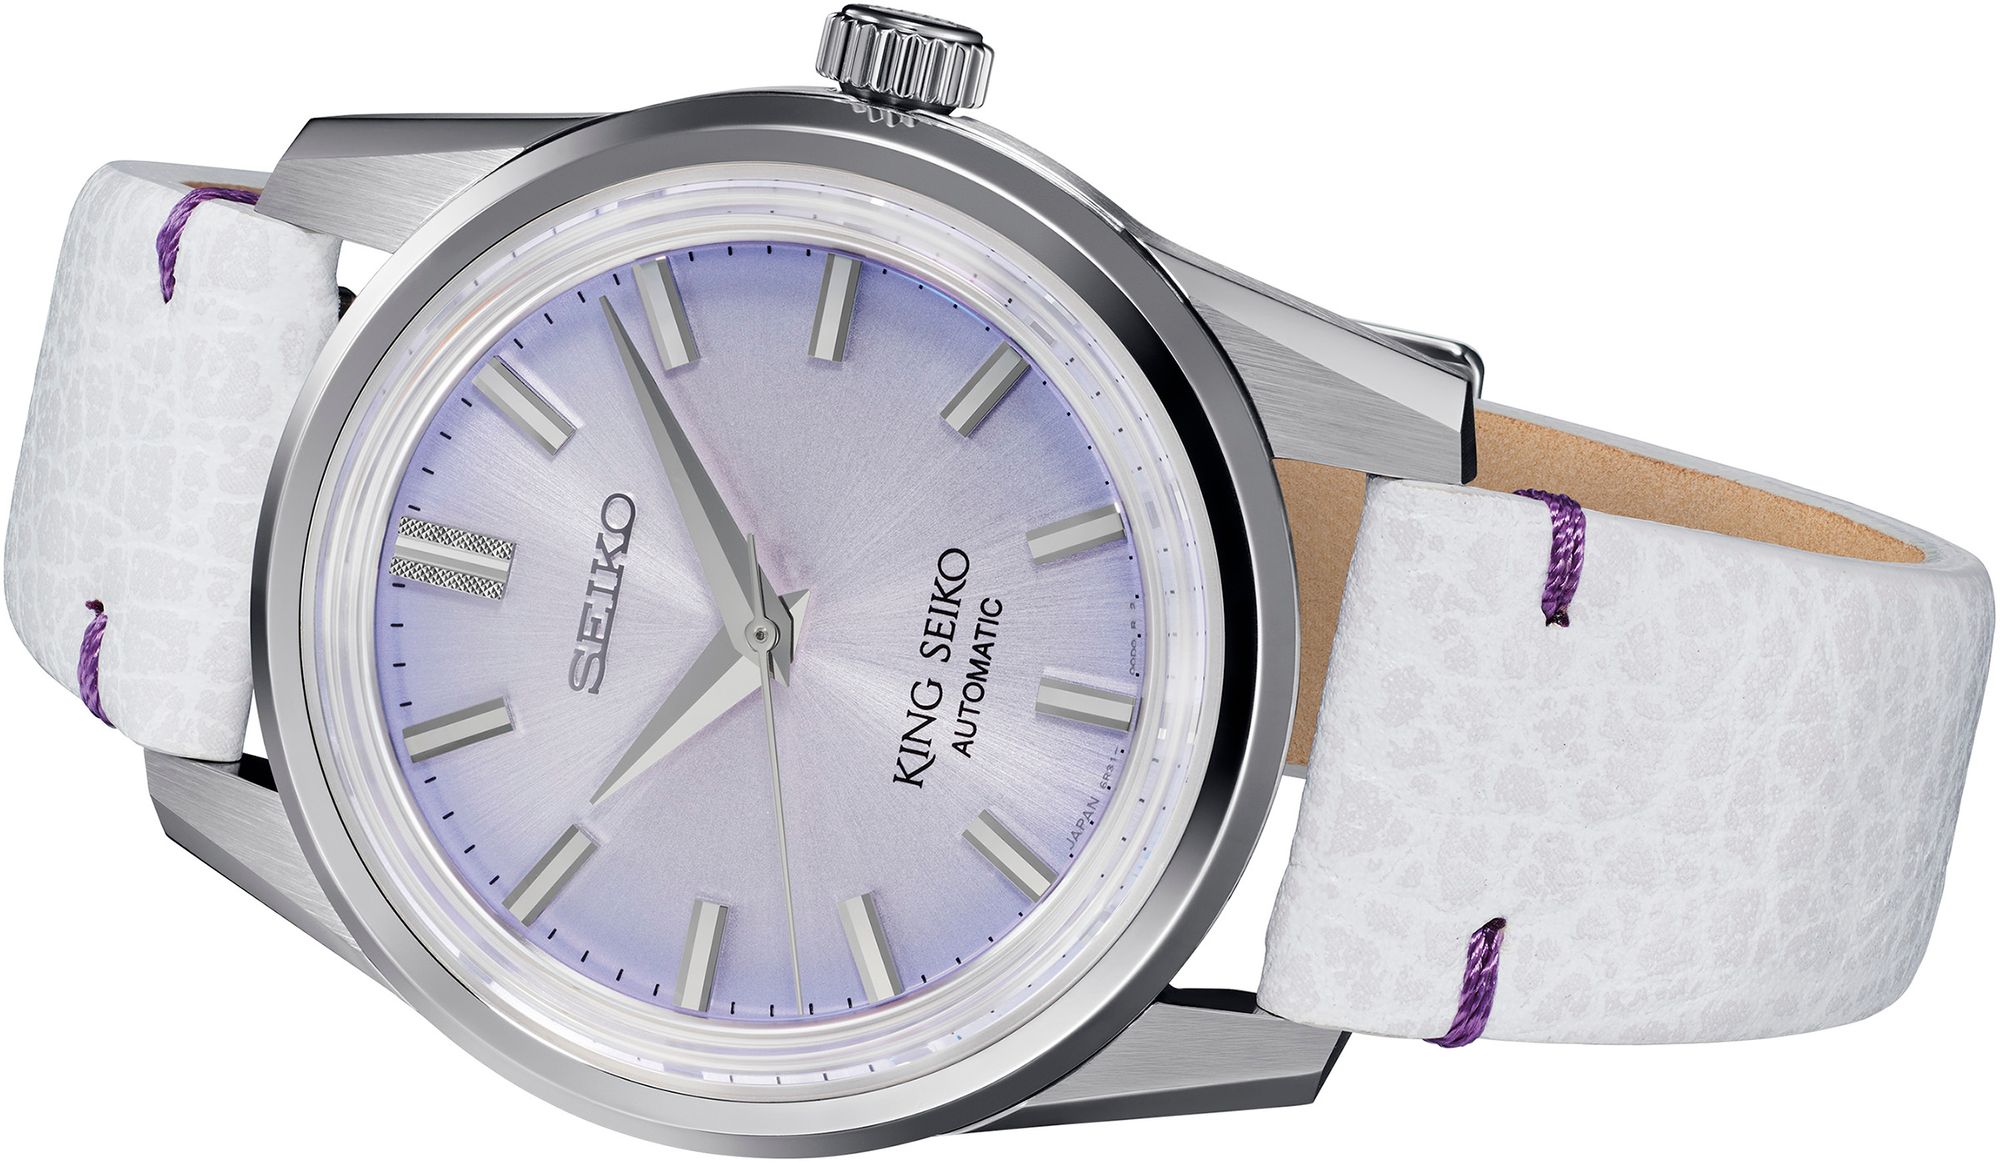 Seiko Unveils New King Seiko SJE087 and SPB291 Watches | aBlogtoWatch